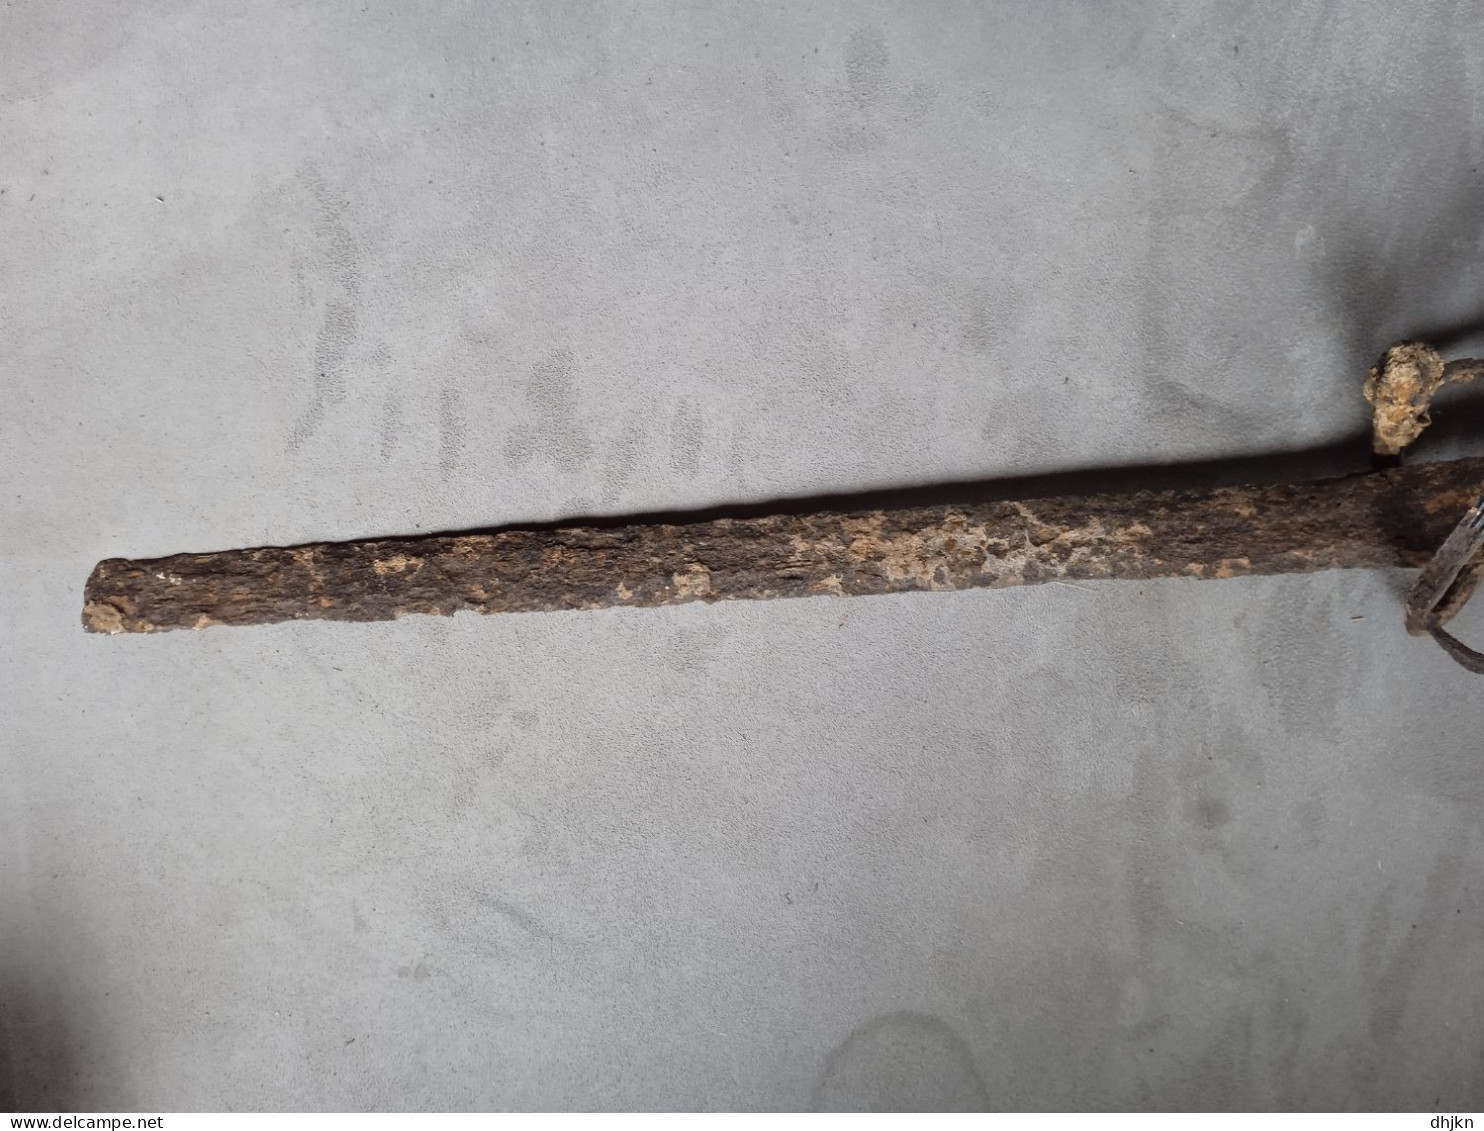 épée rapière originale XVI eme siecle